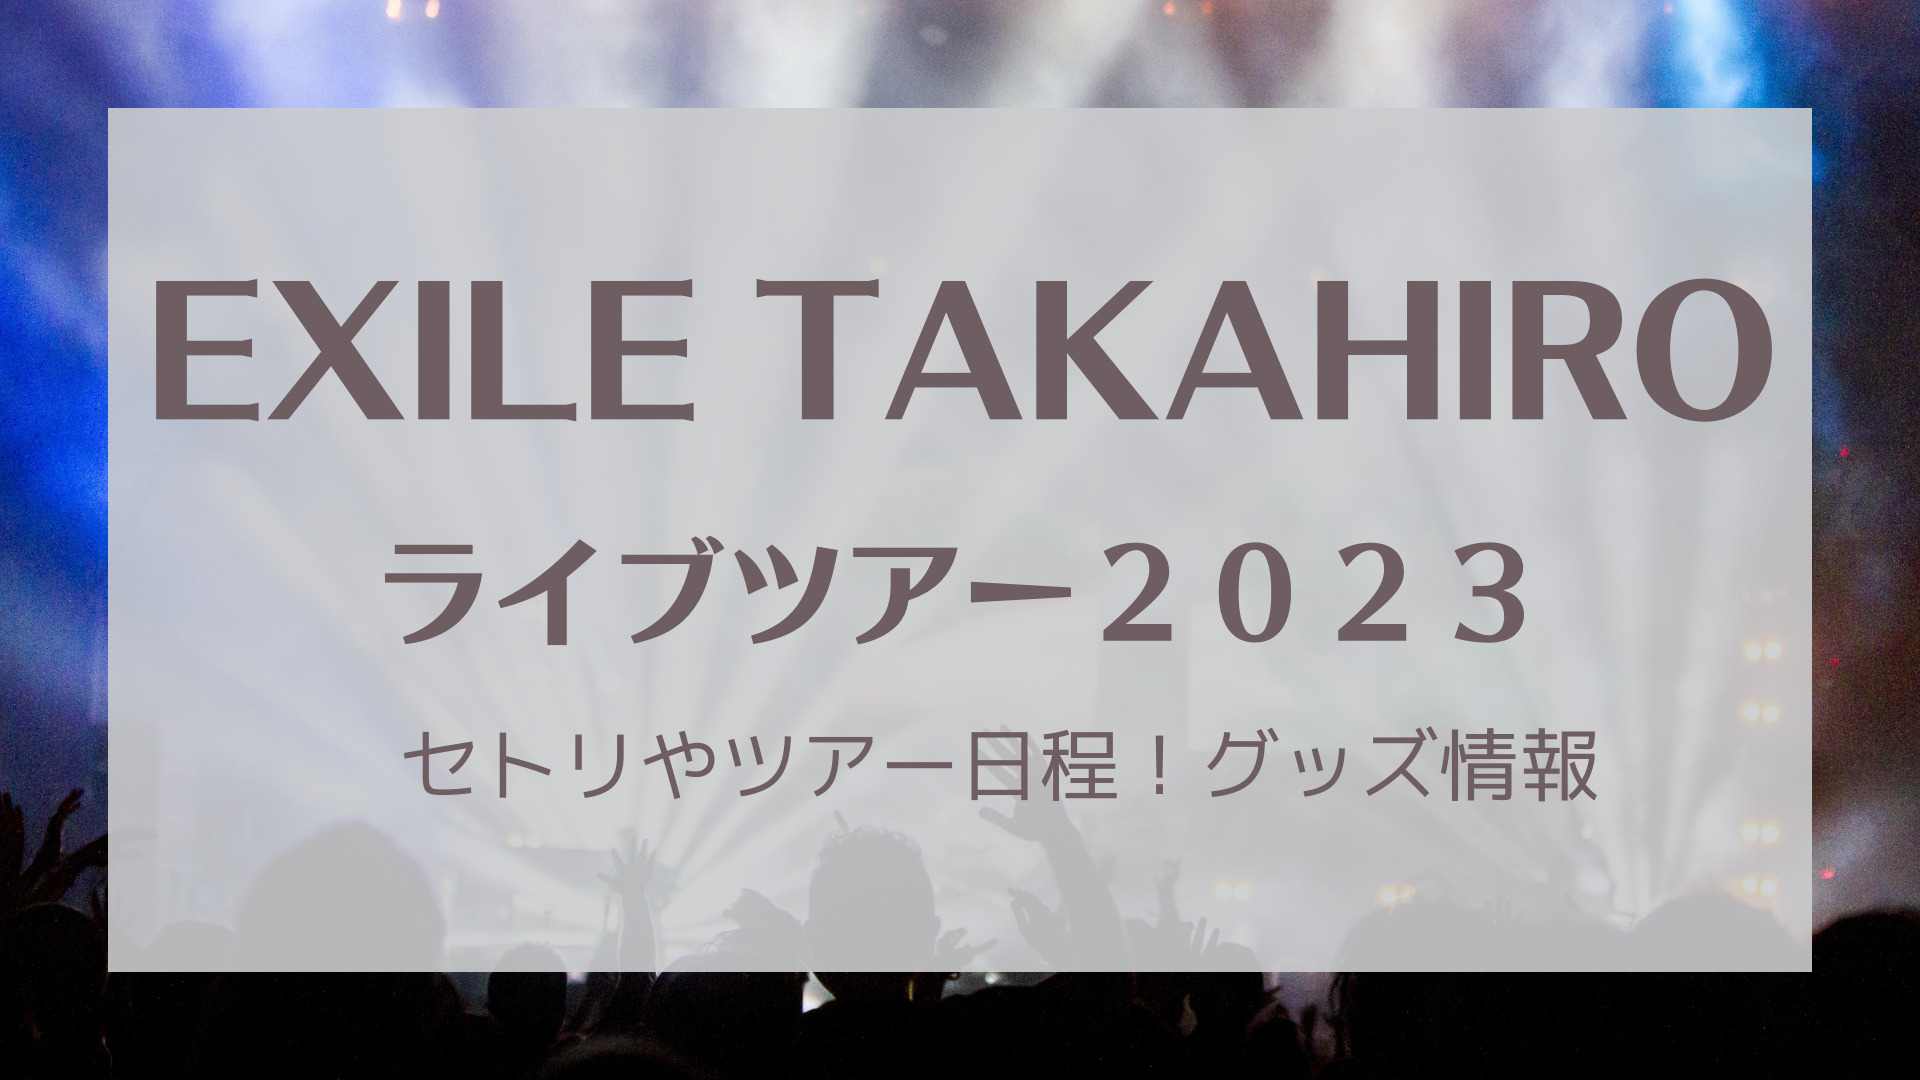 EXILE TAKAHIRO 道の駅 2023 TKHRぬいぐるみ-